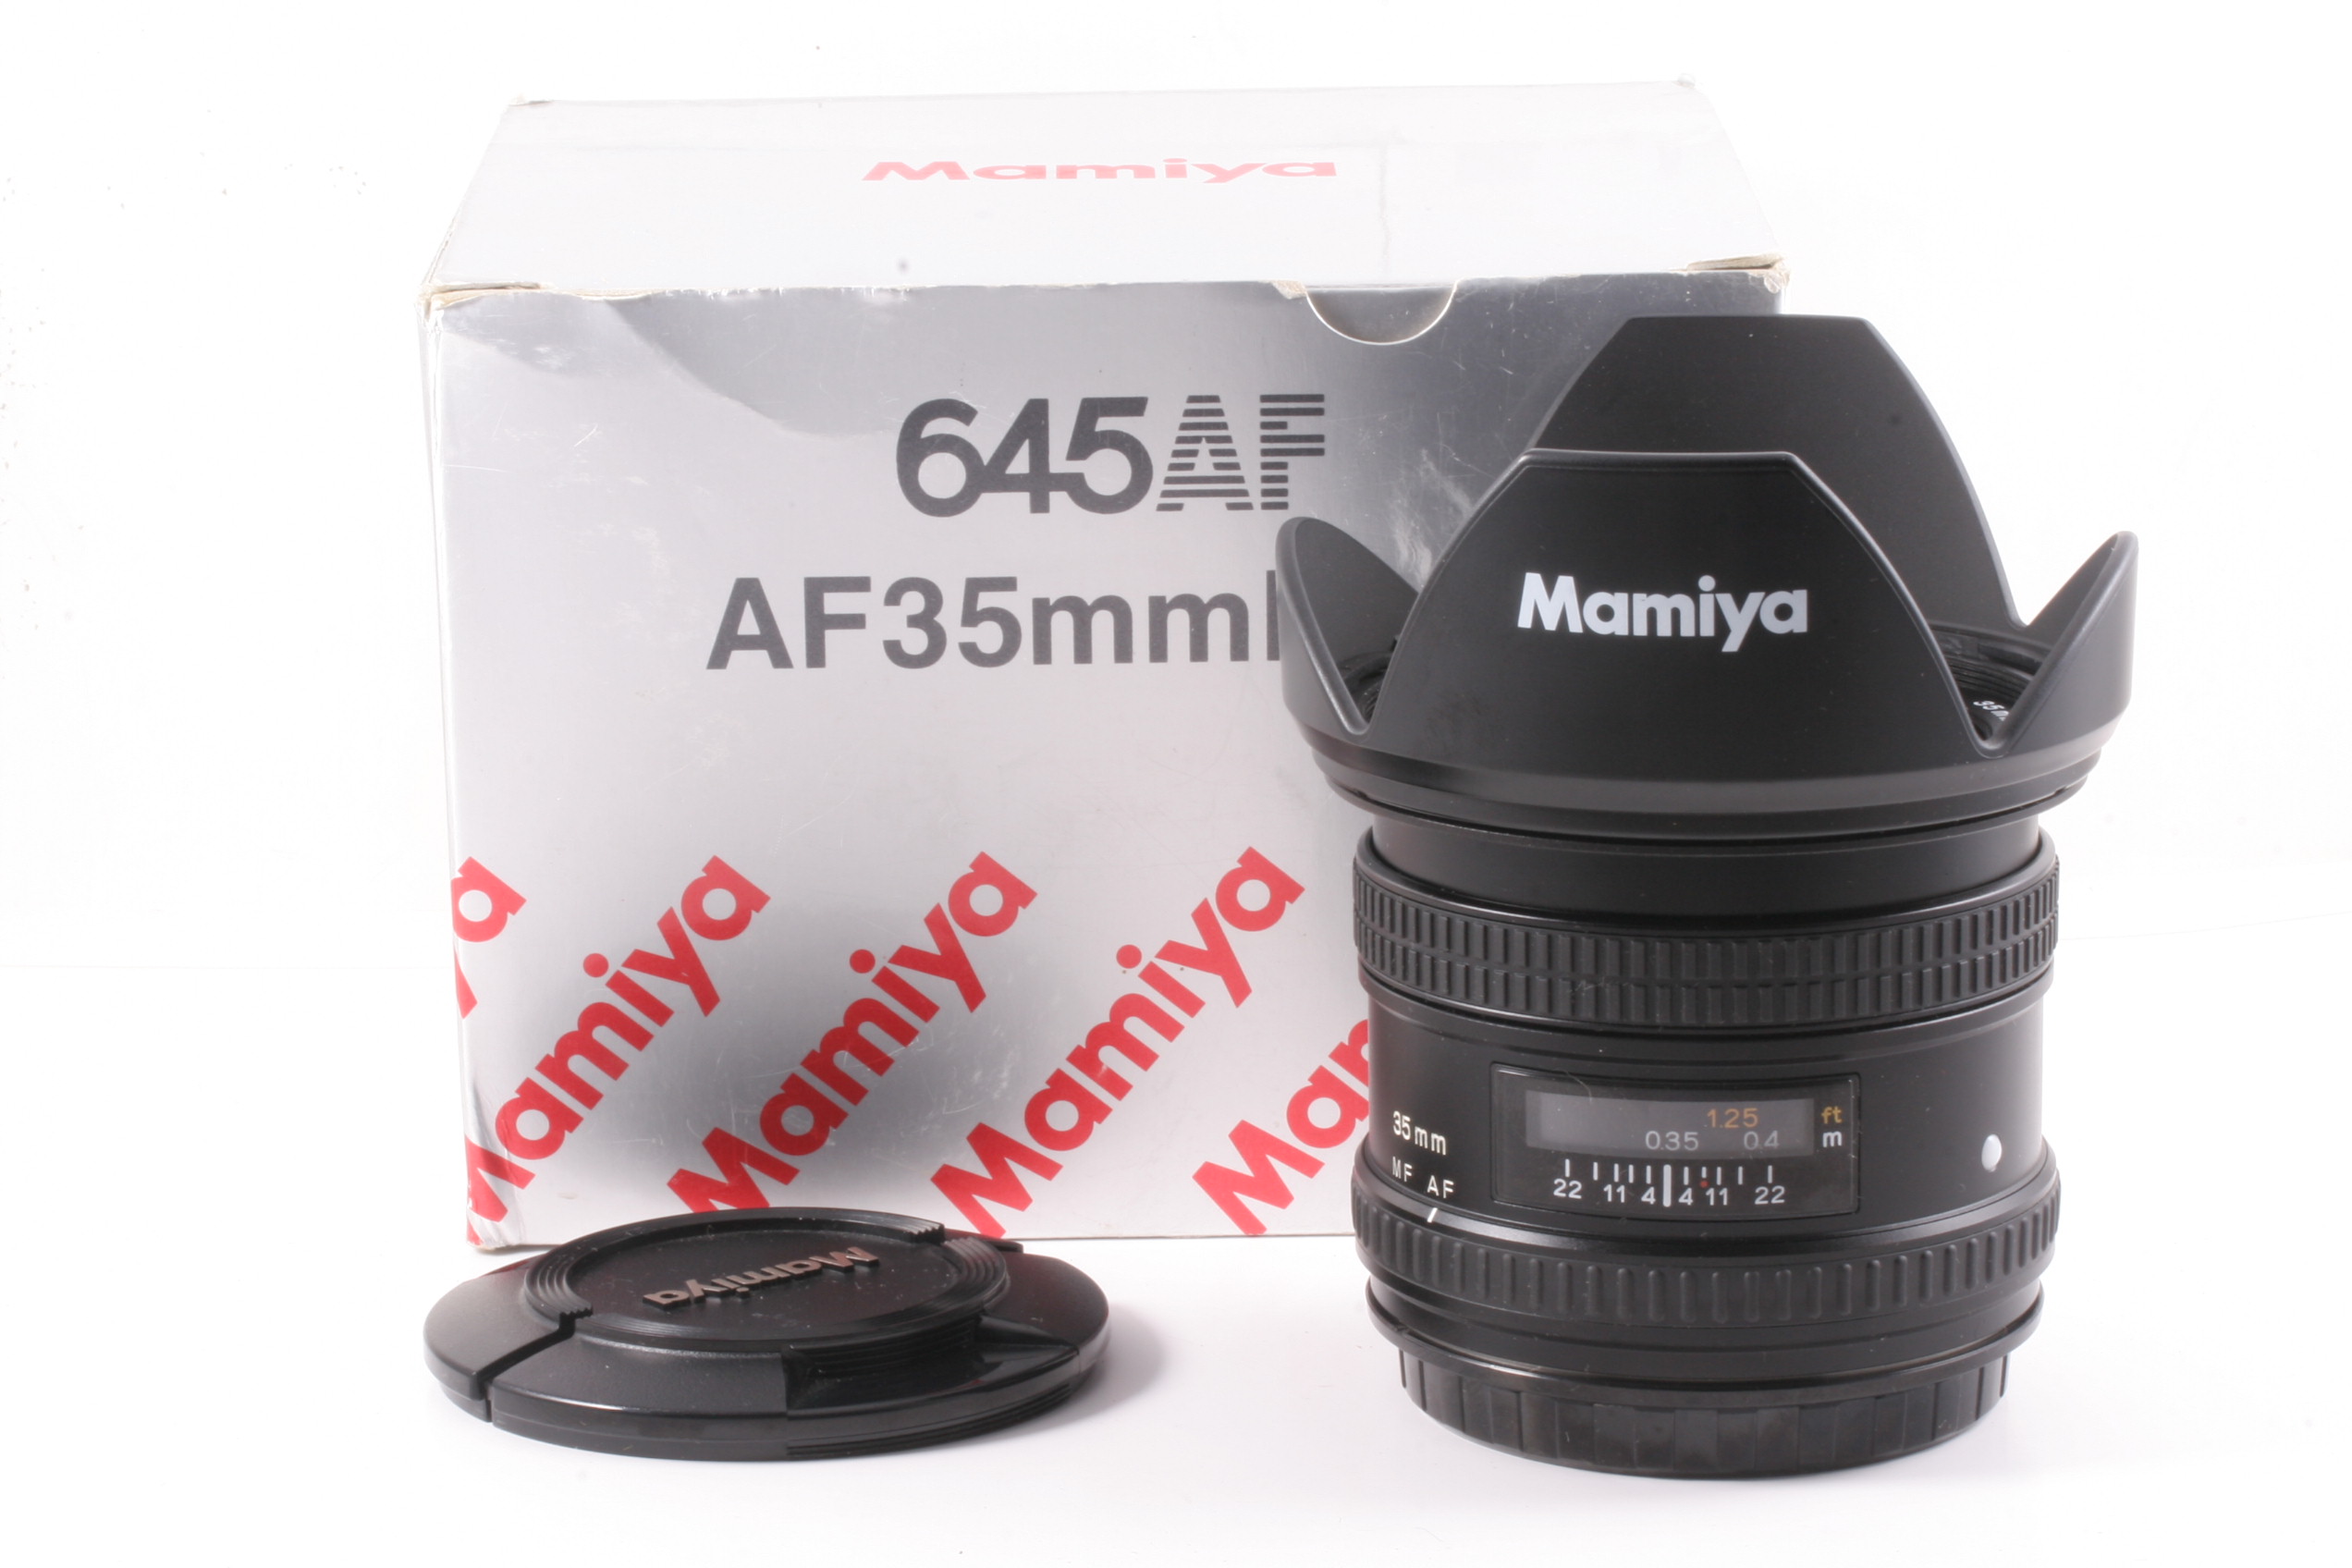 98/玛米亚 645 AF 35mm f/3.5 中画幅自动镜头 ( 全套包装 )